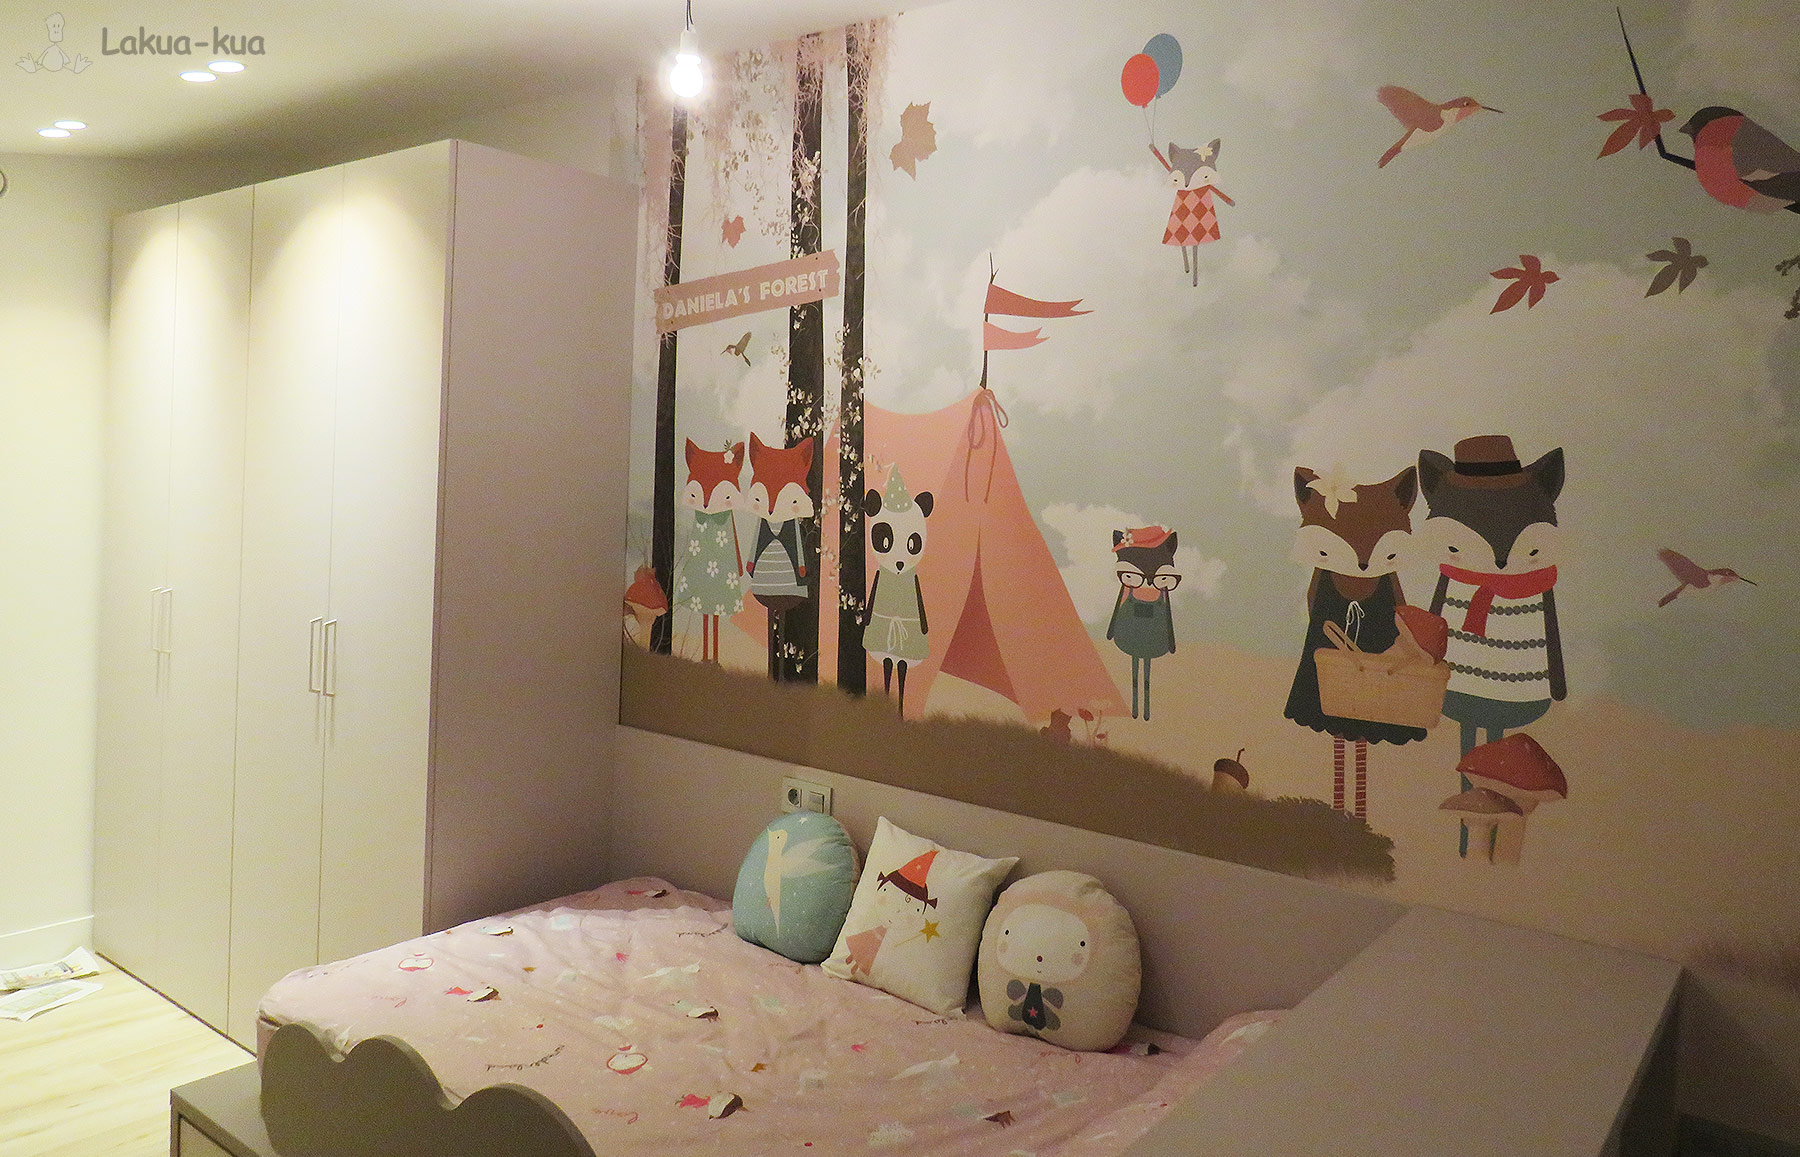 Habitación completa + mural - Dormitorio Joven Infantil Juvenil Muebles Lakua-kua